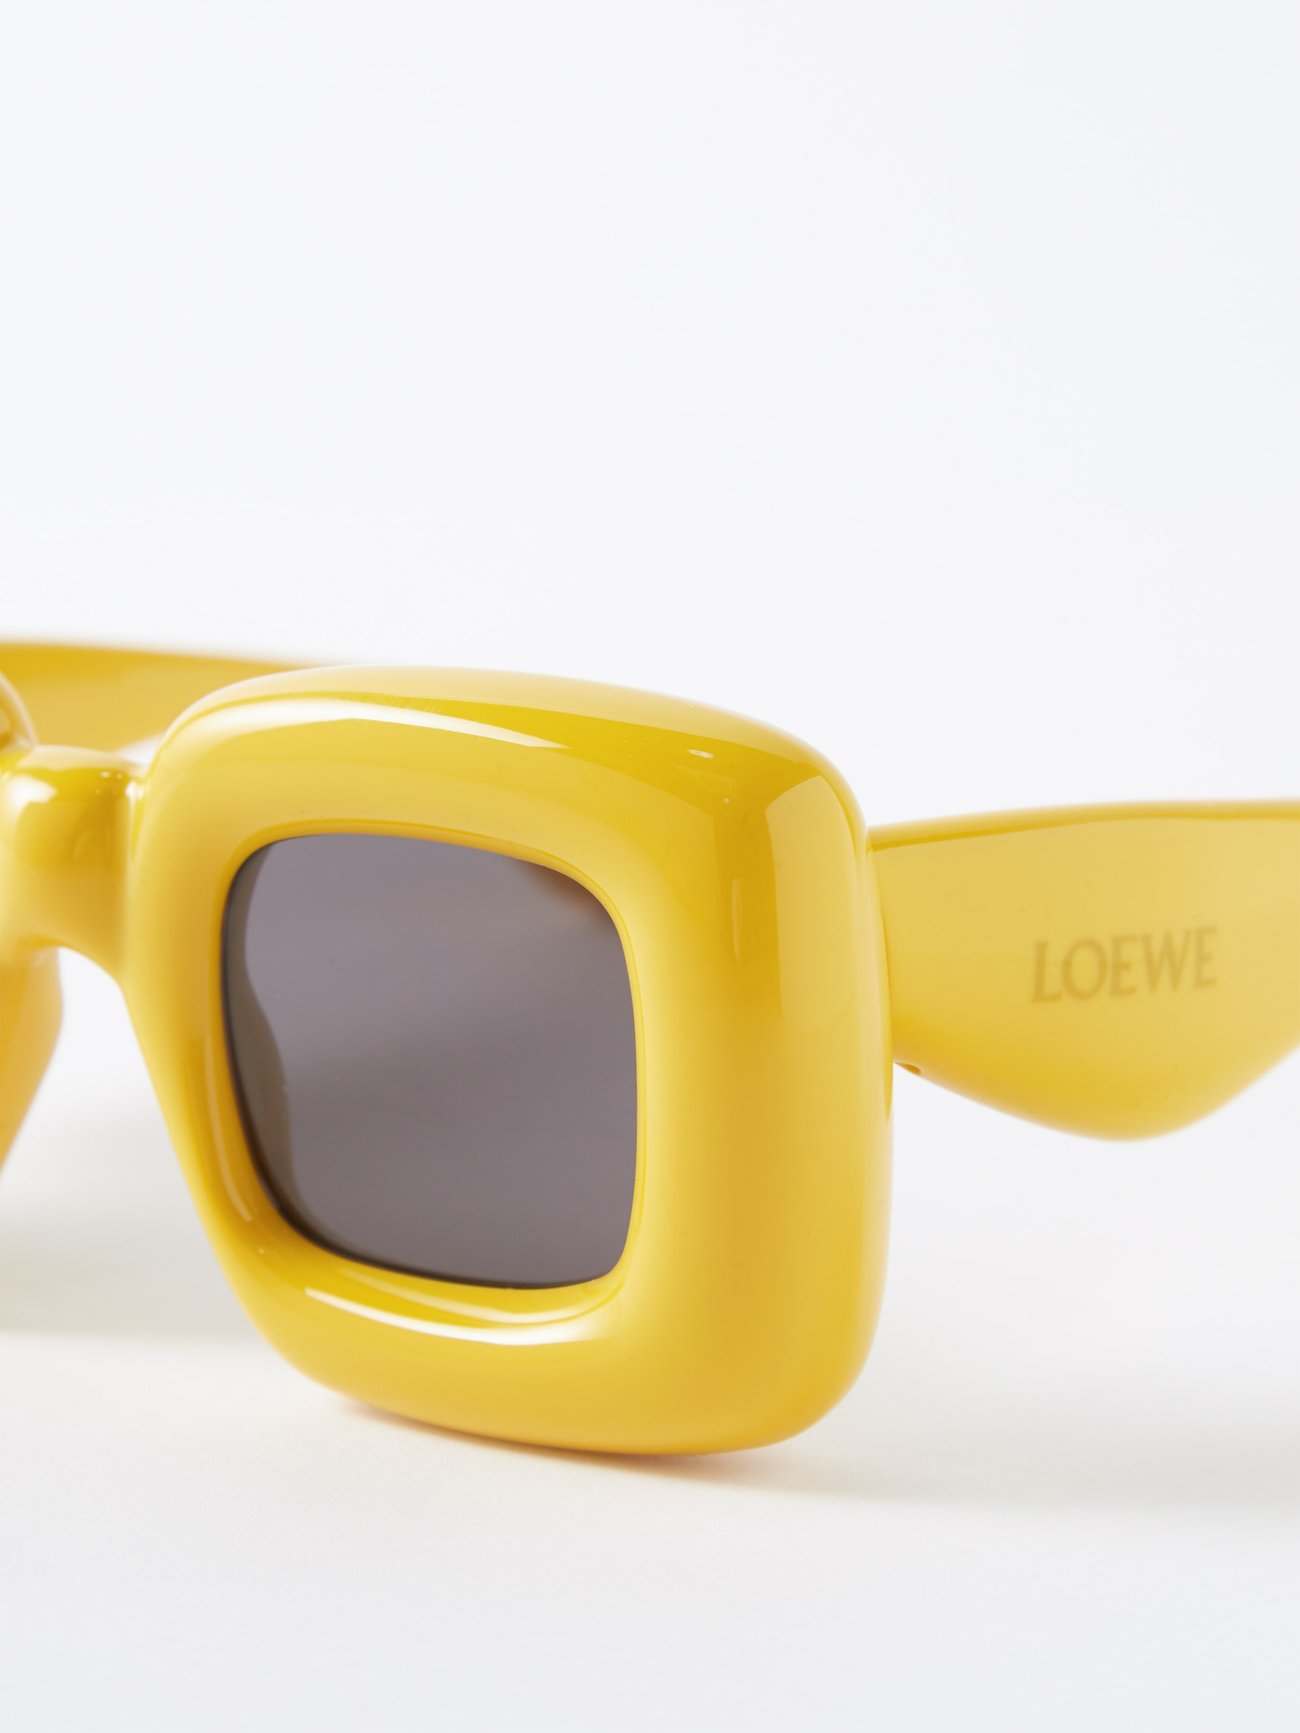 Loewe Yellow Rectangular Sunglasses